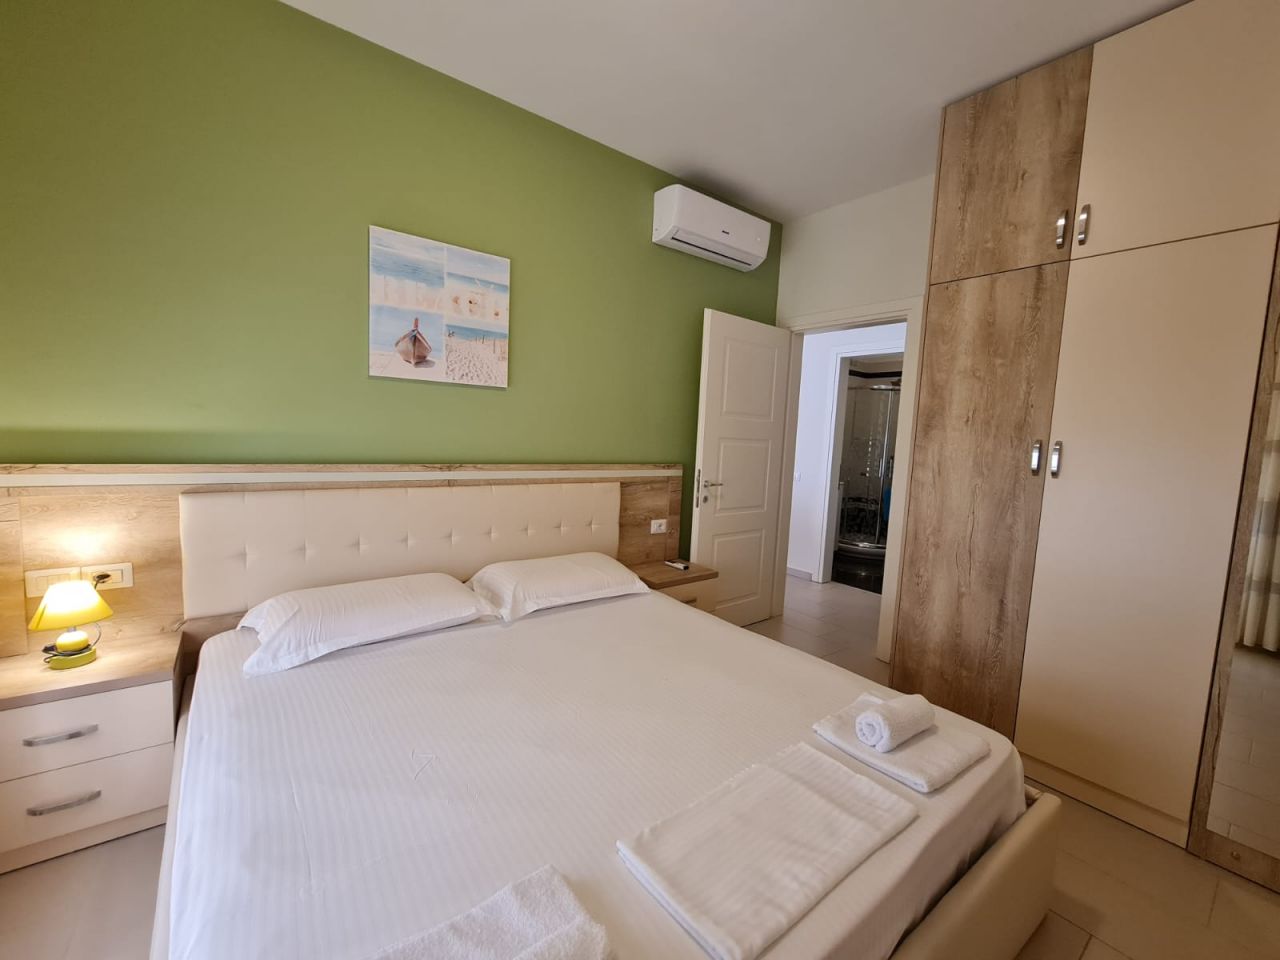 Napi bérelhető apartman nyaralásra Vlorában